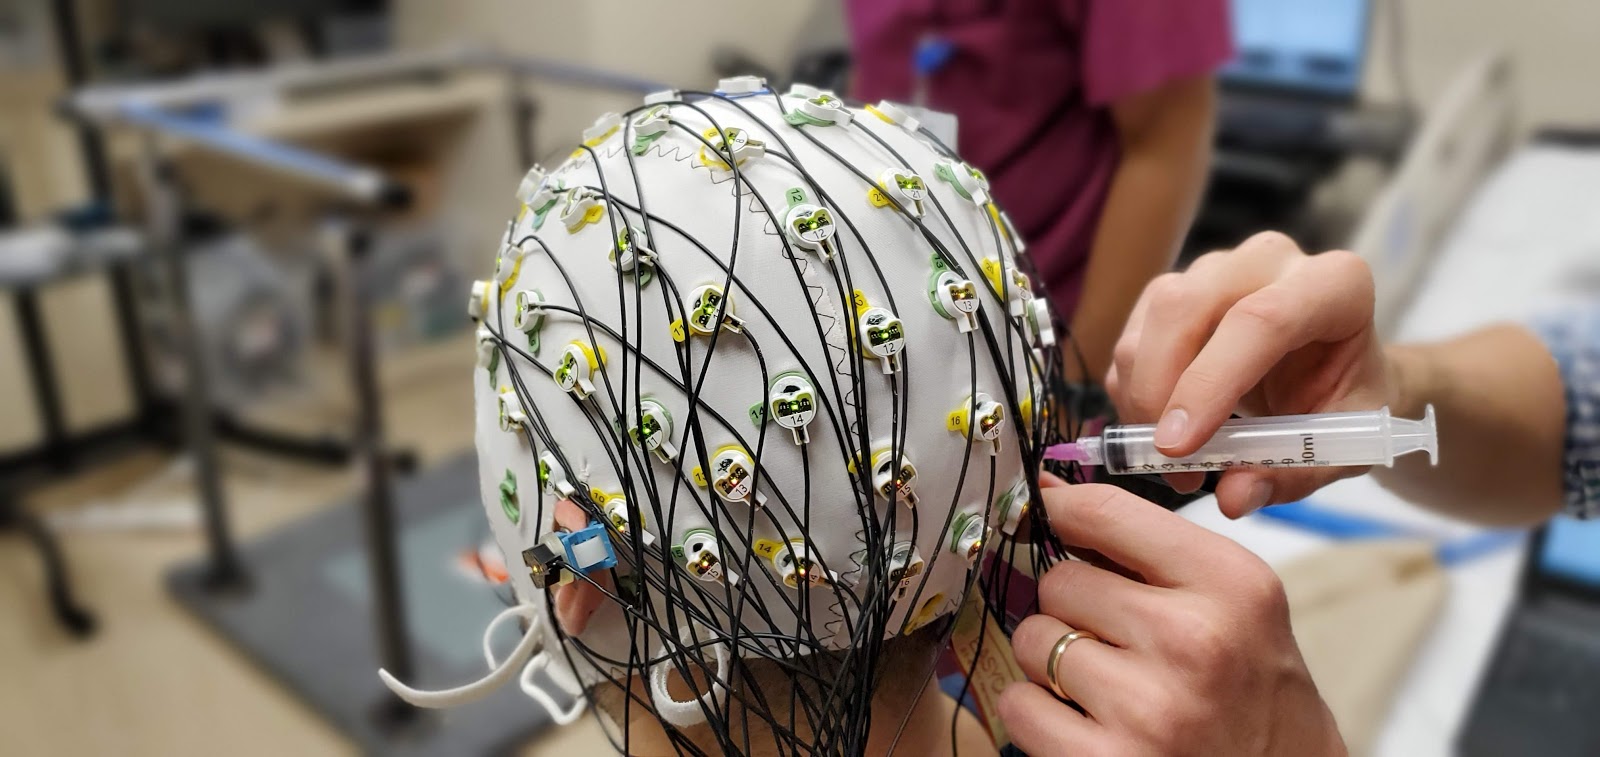 EEG setup